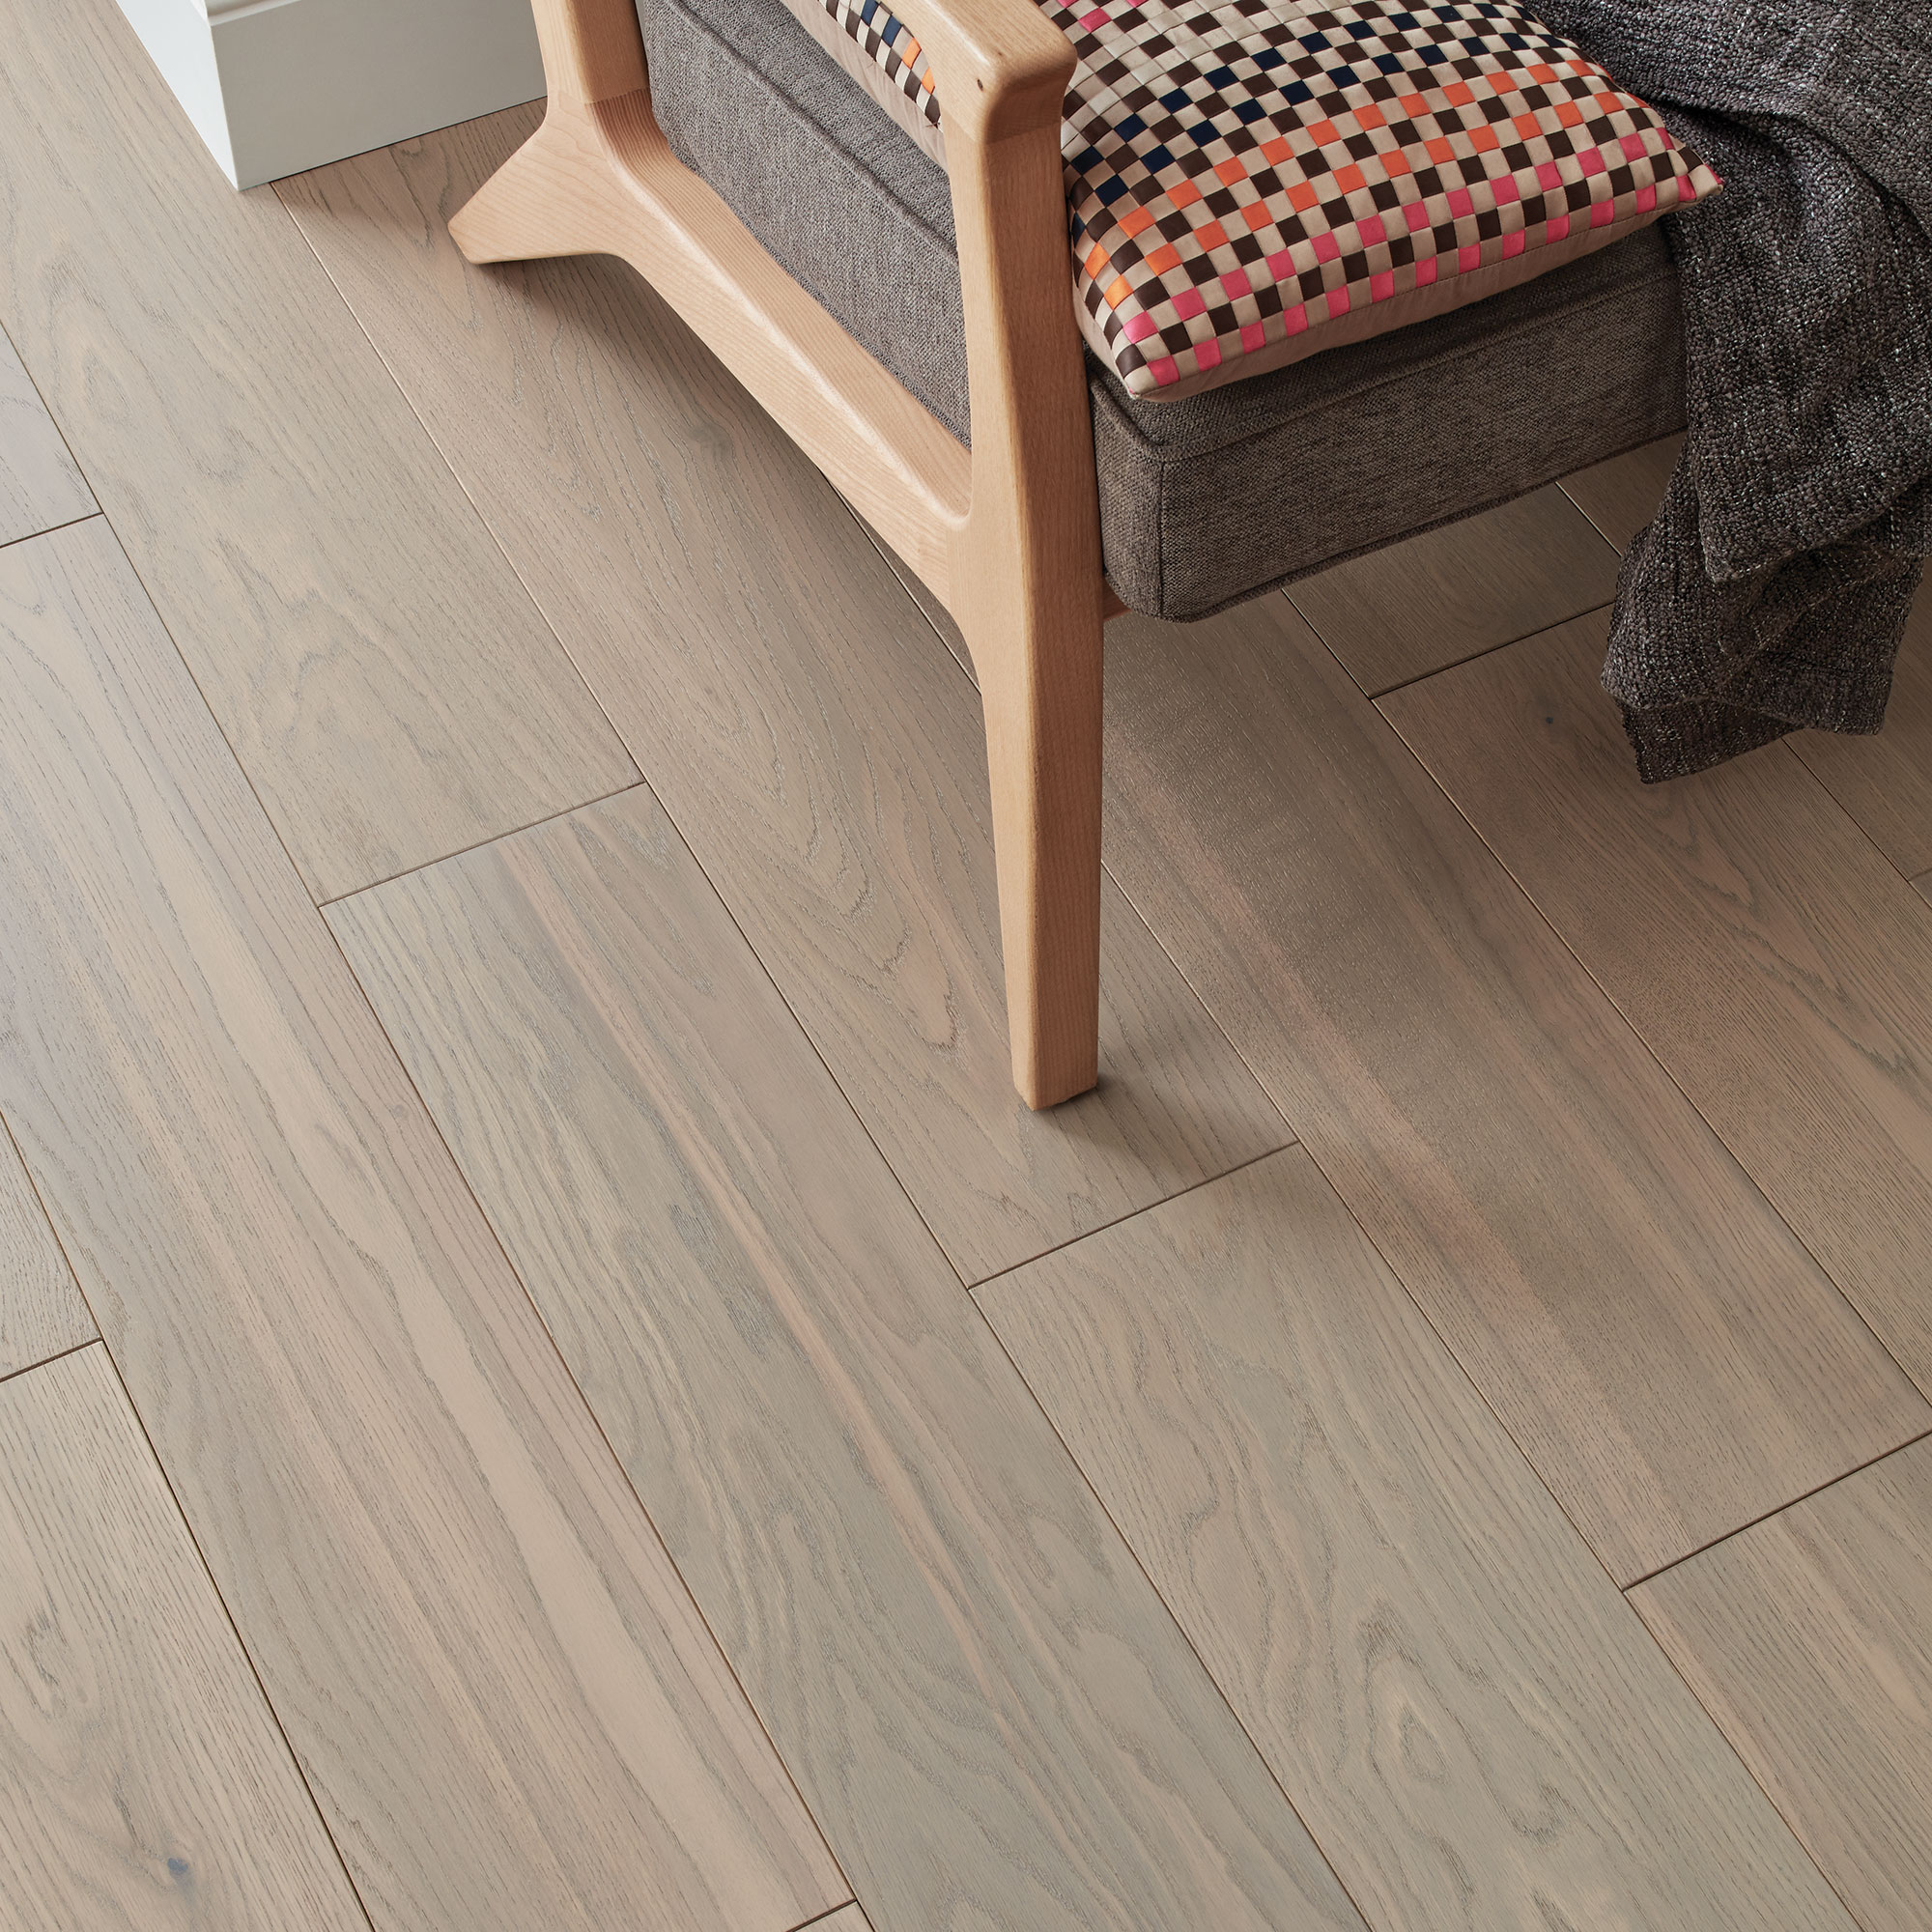 50 Best Wood floor repair york for Living Room